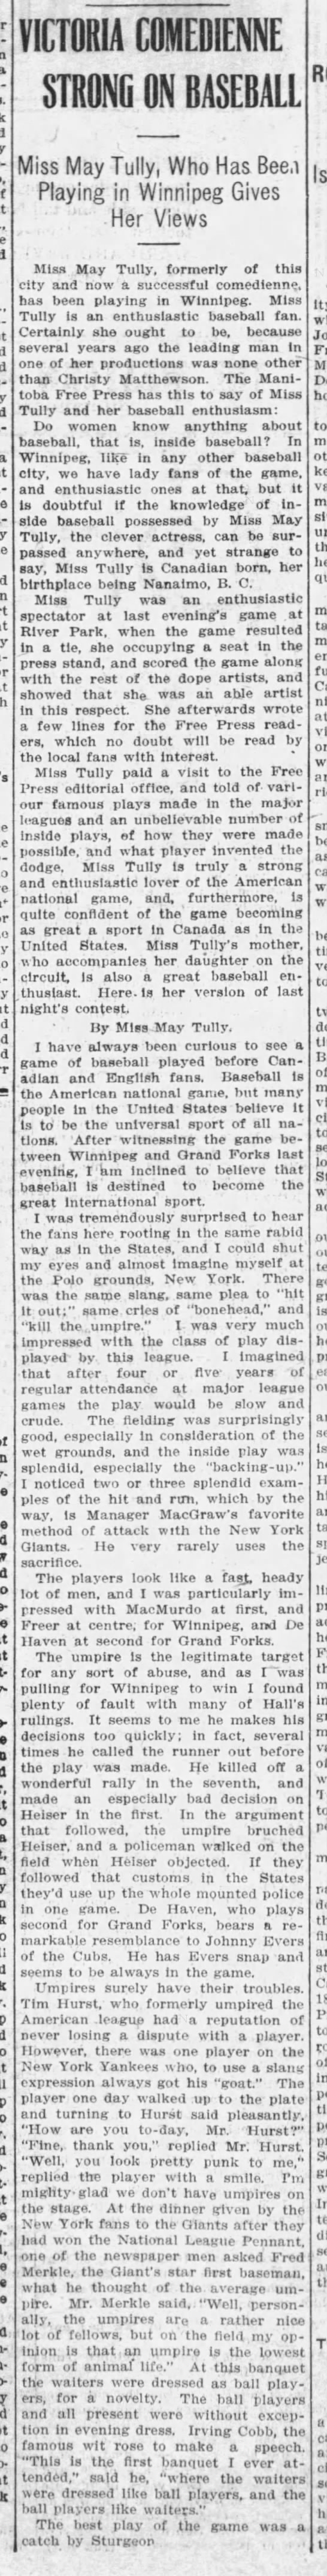 May Tully on Baseball 1912 - 